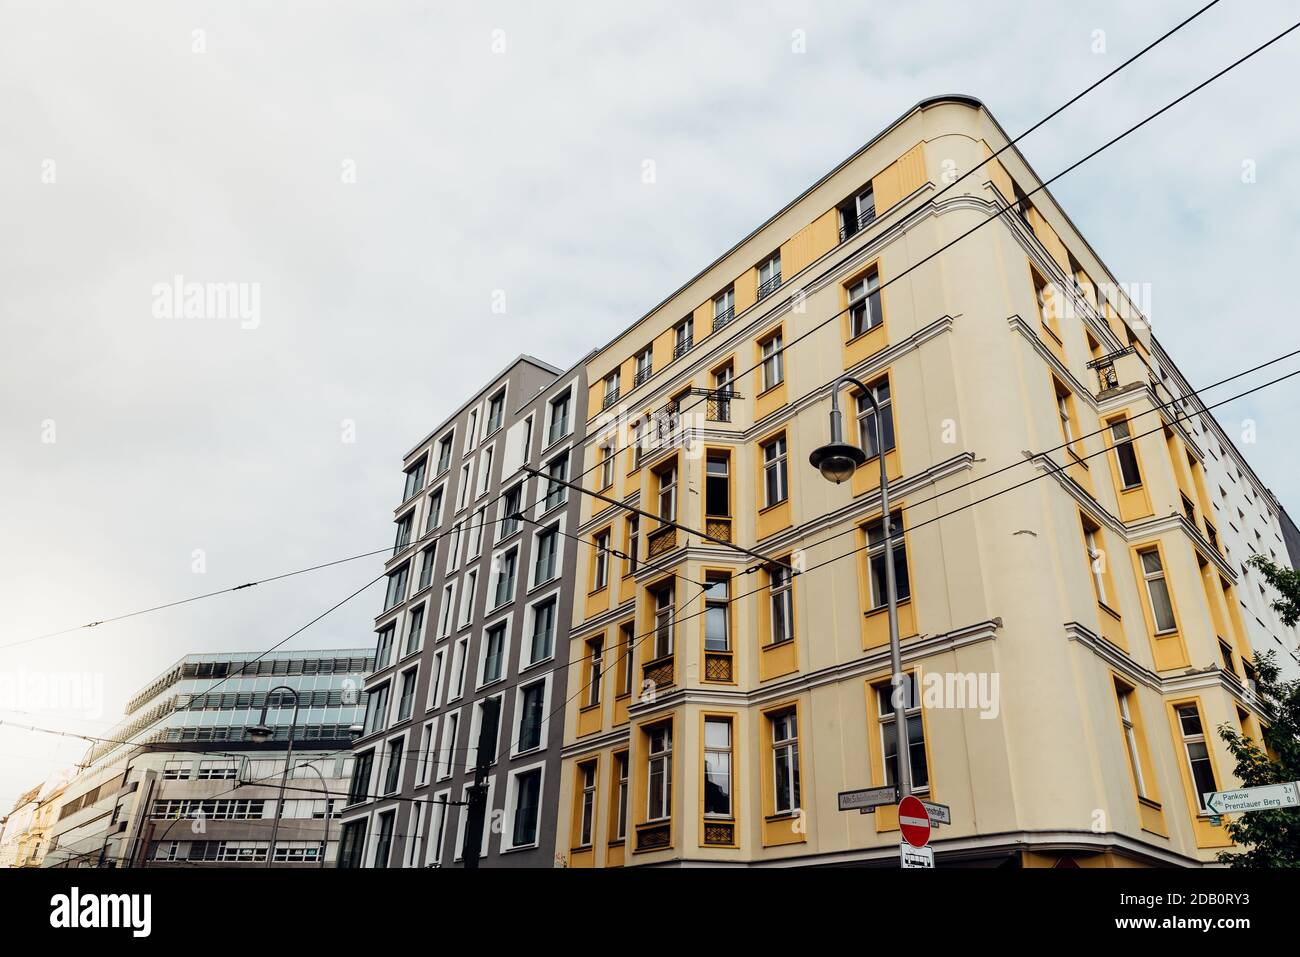 Apartmentgebäude im Zentrum von Berlin. Blick auf den Himmel mit Straßenbahnkabeln Stockfoto